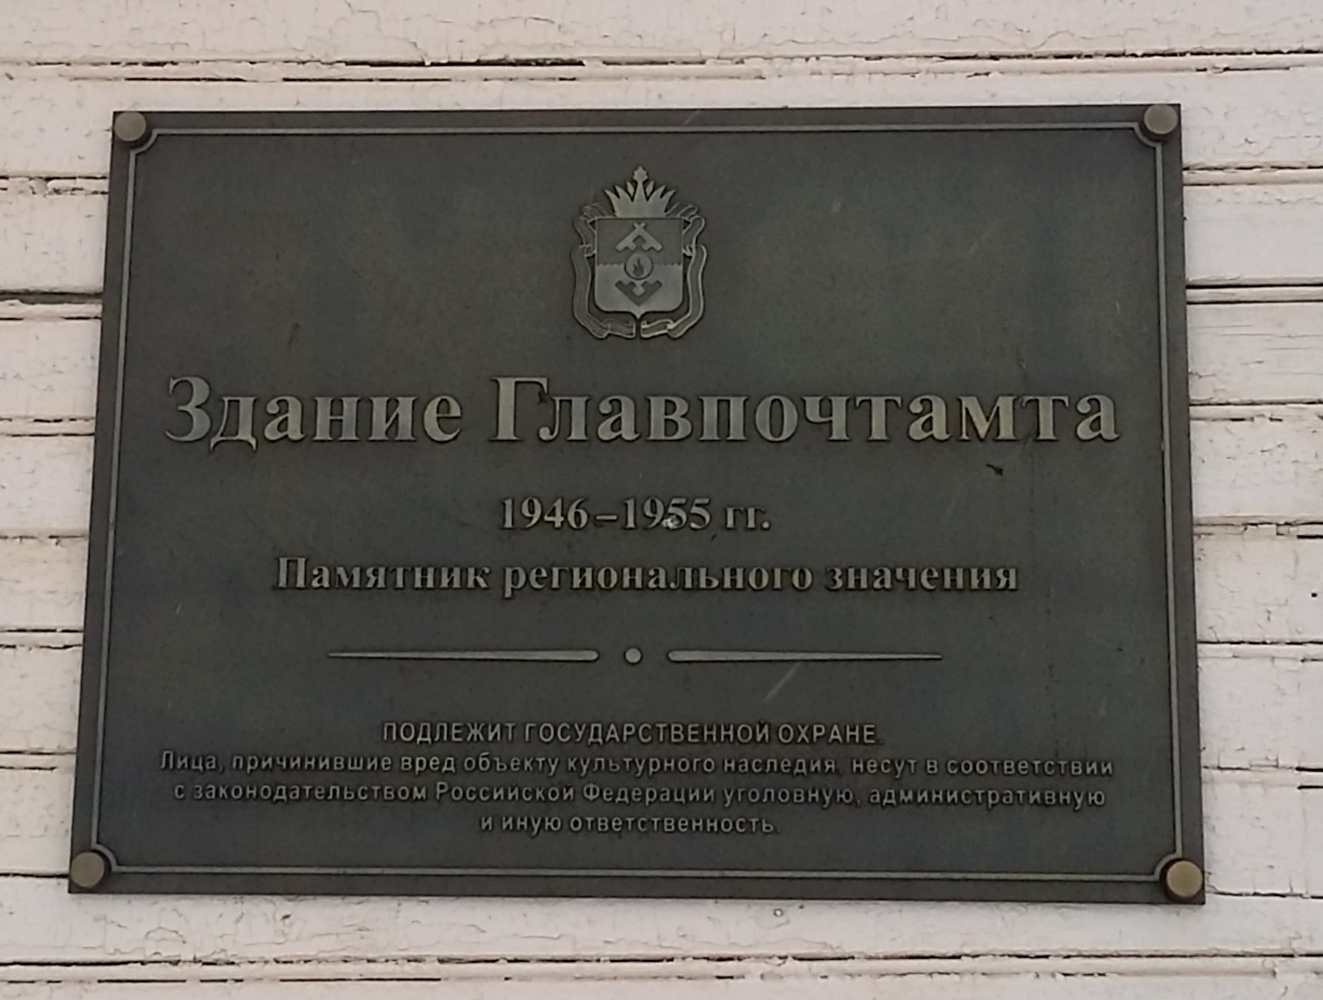 Naryan-Mar, Улица Смидовича, 25. Naryan-Mar — Memorial plaques